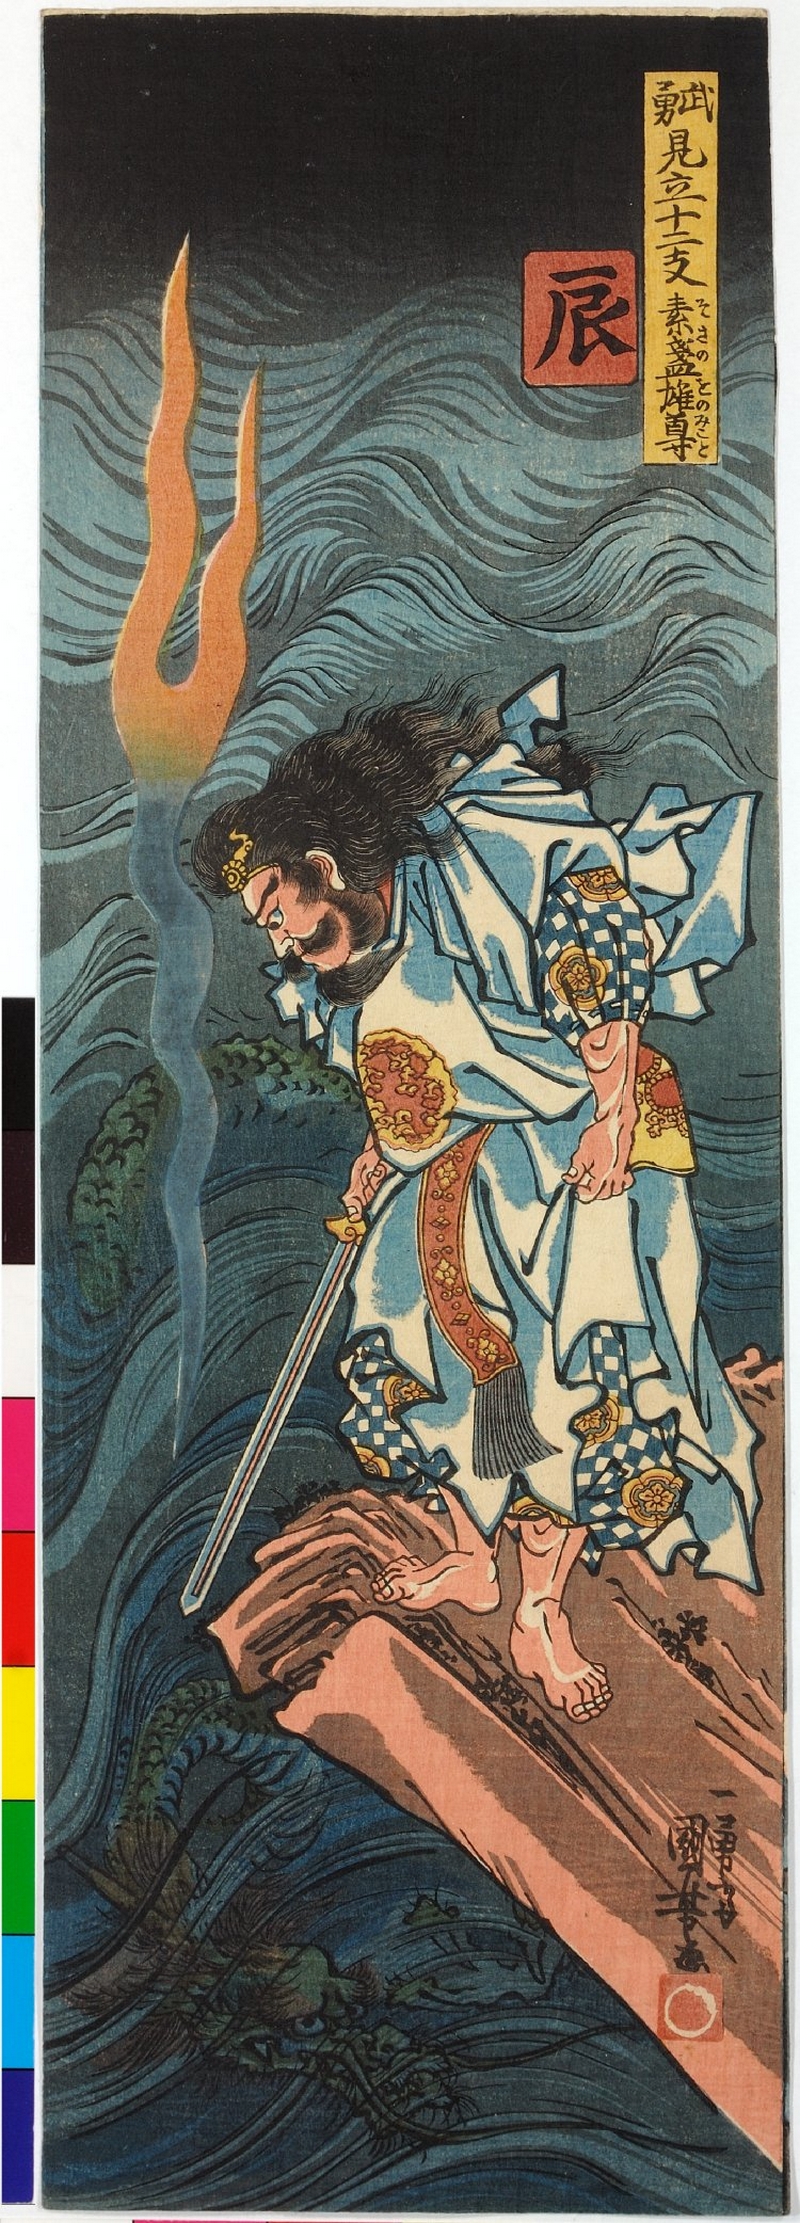 Онлайн-архив с 213 000 прекрасных японских гравюр, созданных с 1700-х годов до наших дней 1